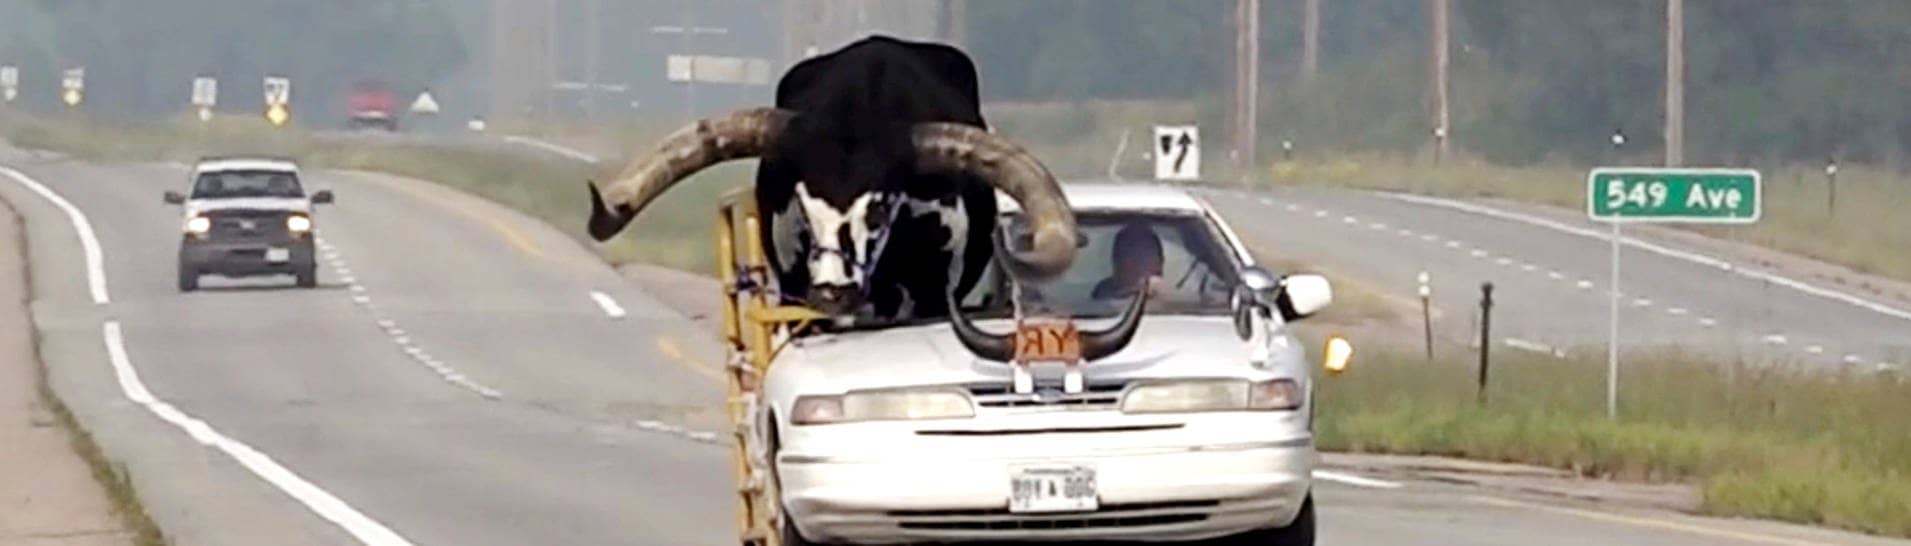 Ein Watussi-Bulle fährt auf dem Beifahrersitz eines Autos